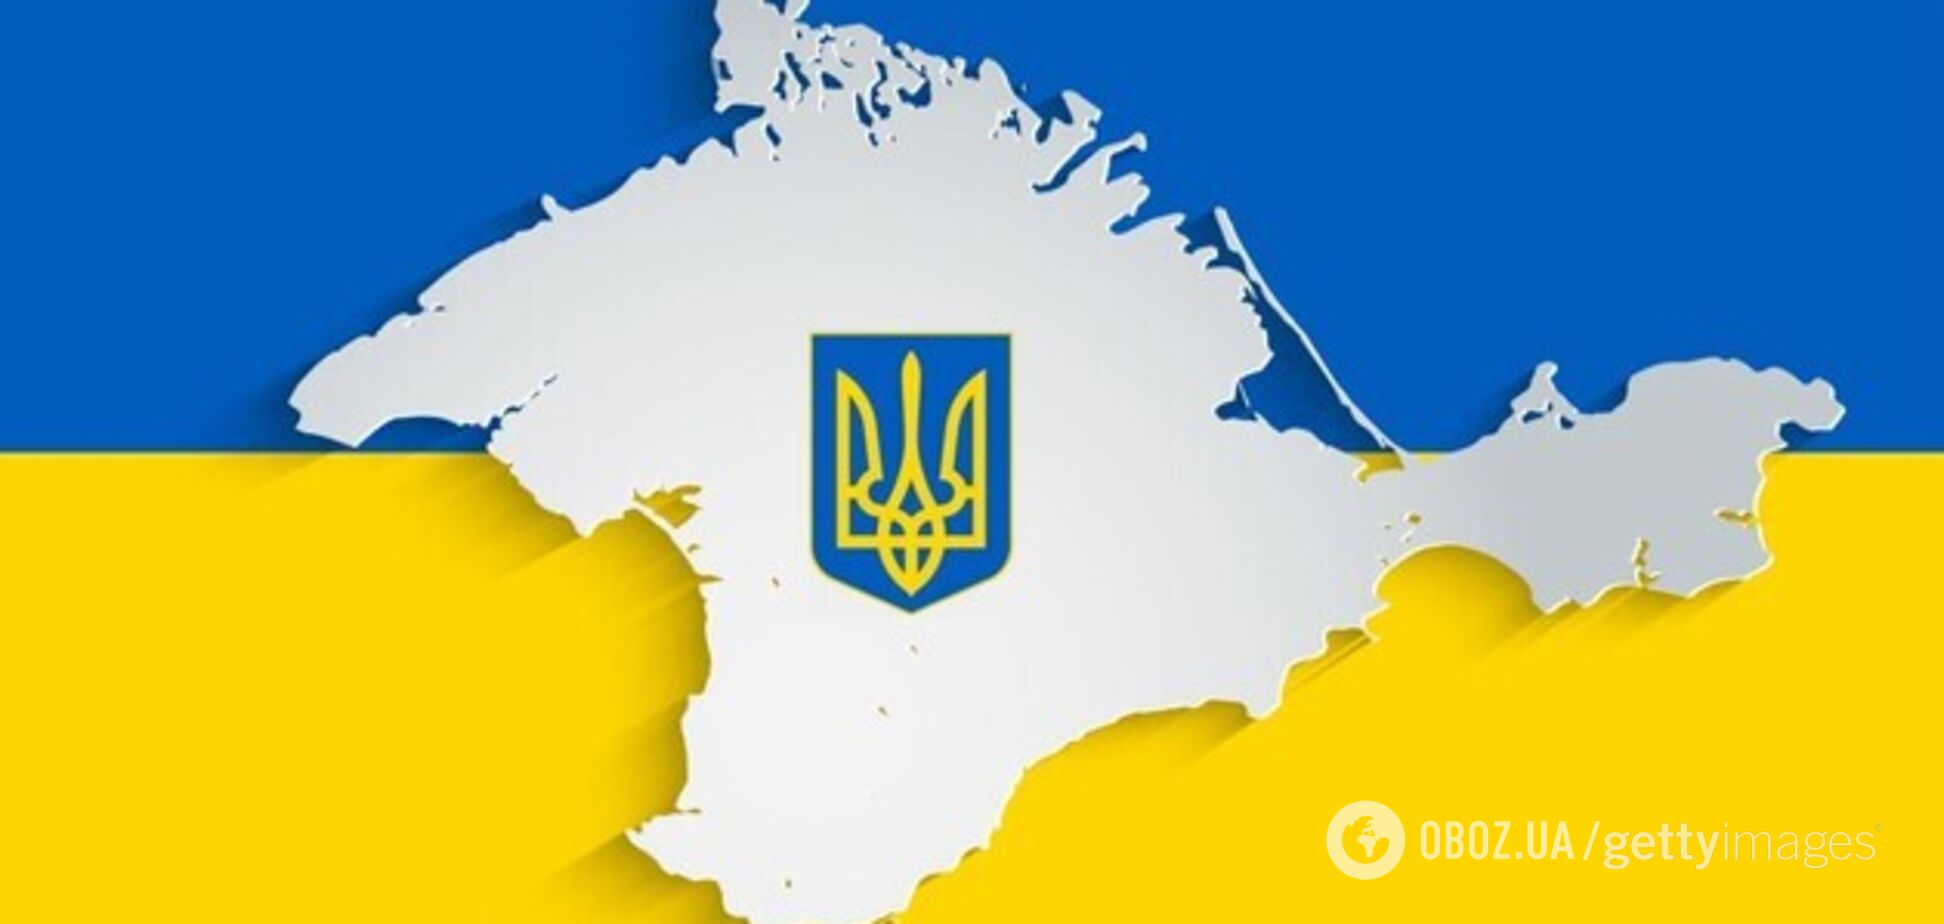 Кримська платформа як міжнародна площадка з деокупації українського півострова